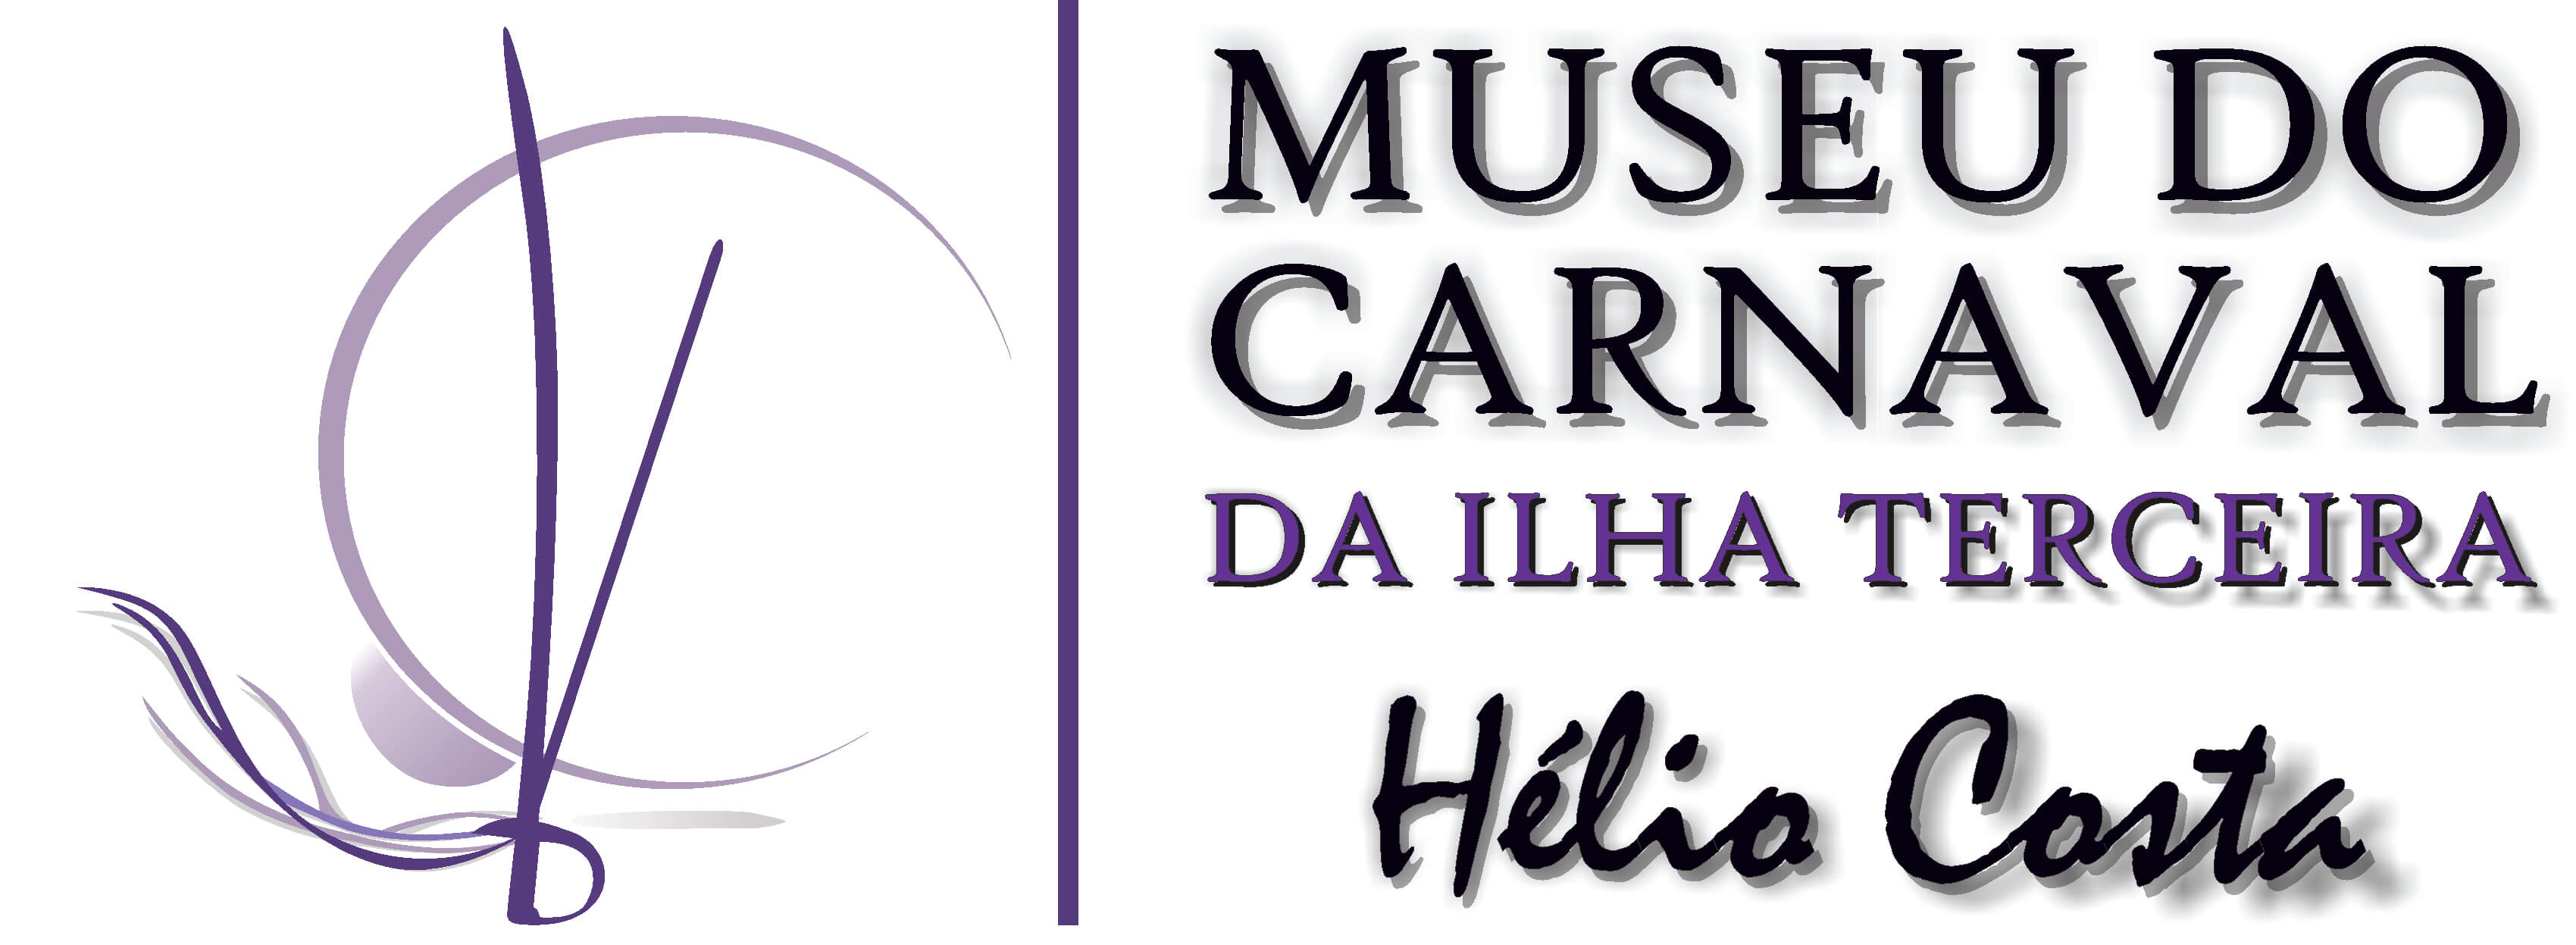 logo-MUSEU-DO-CARNAVAL-1